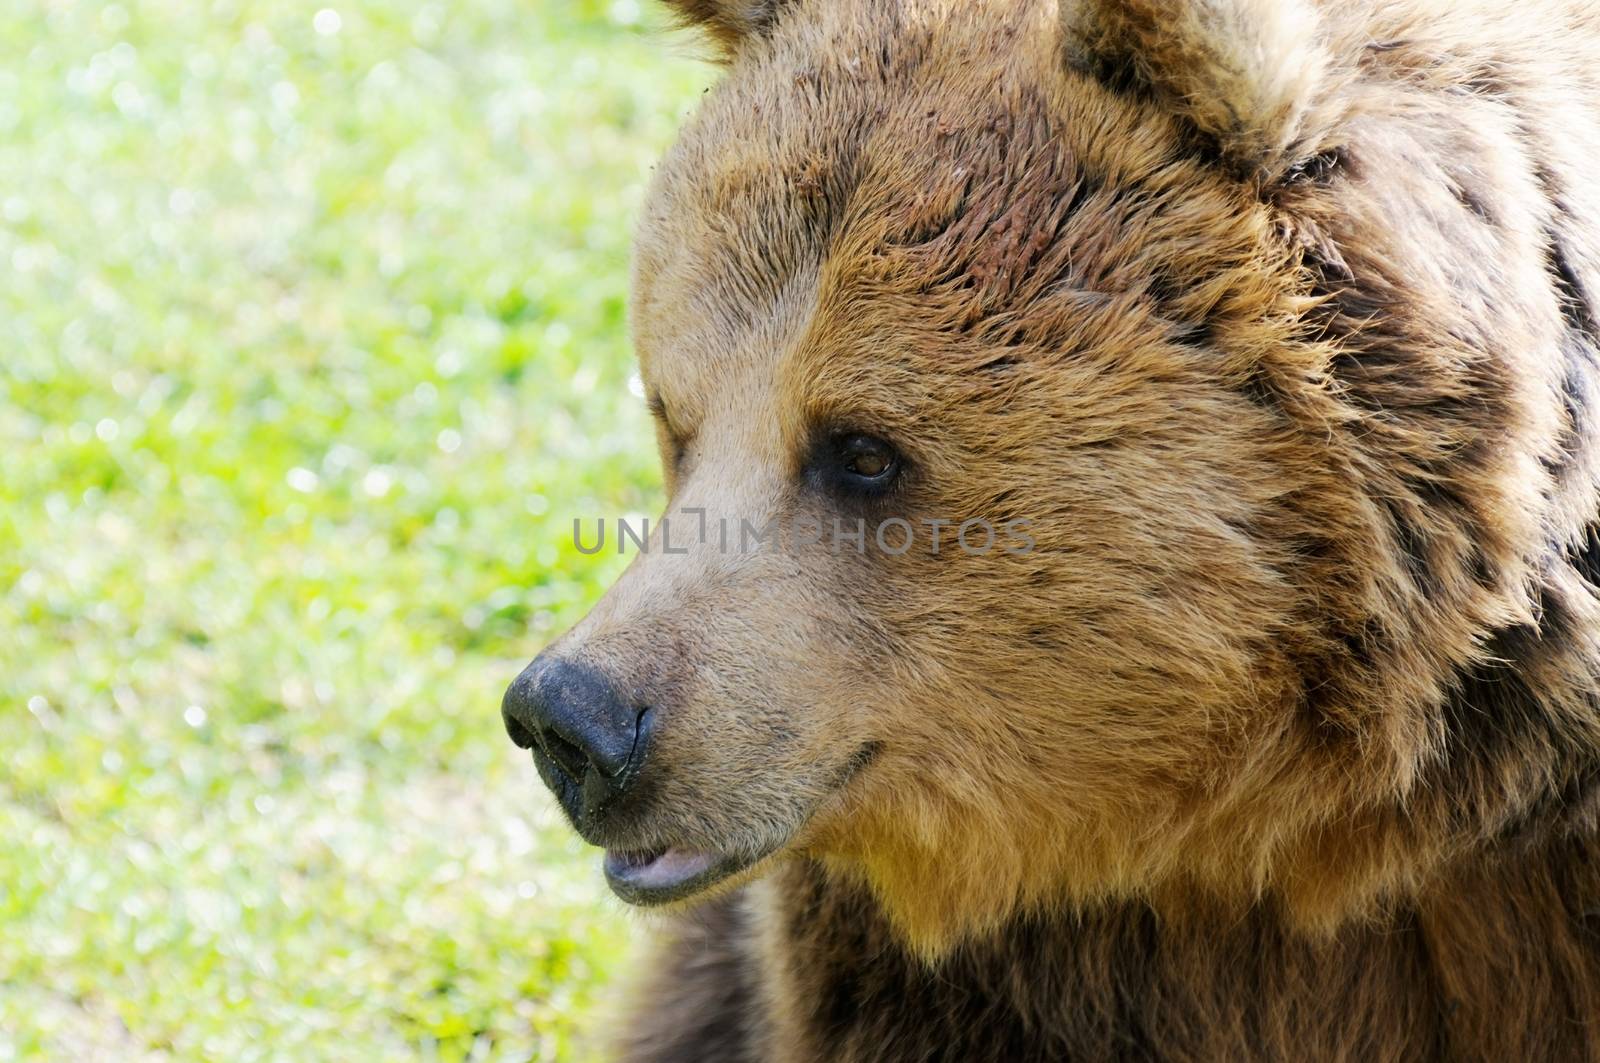 Closeup profile of brown bear head in wild